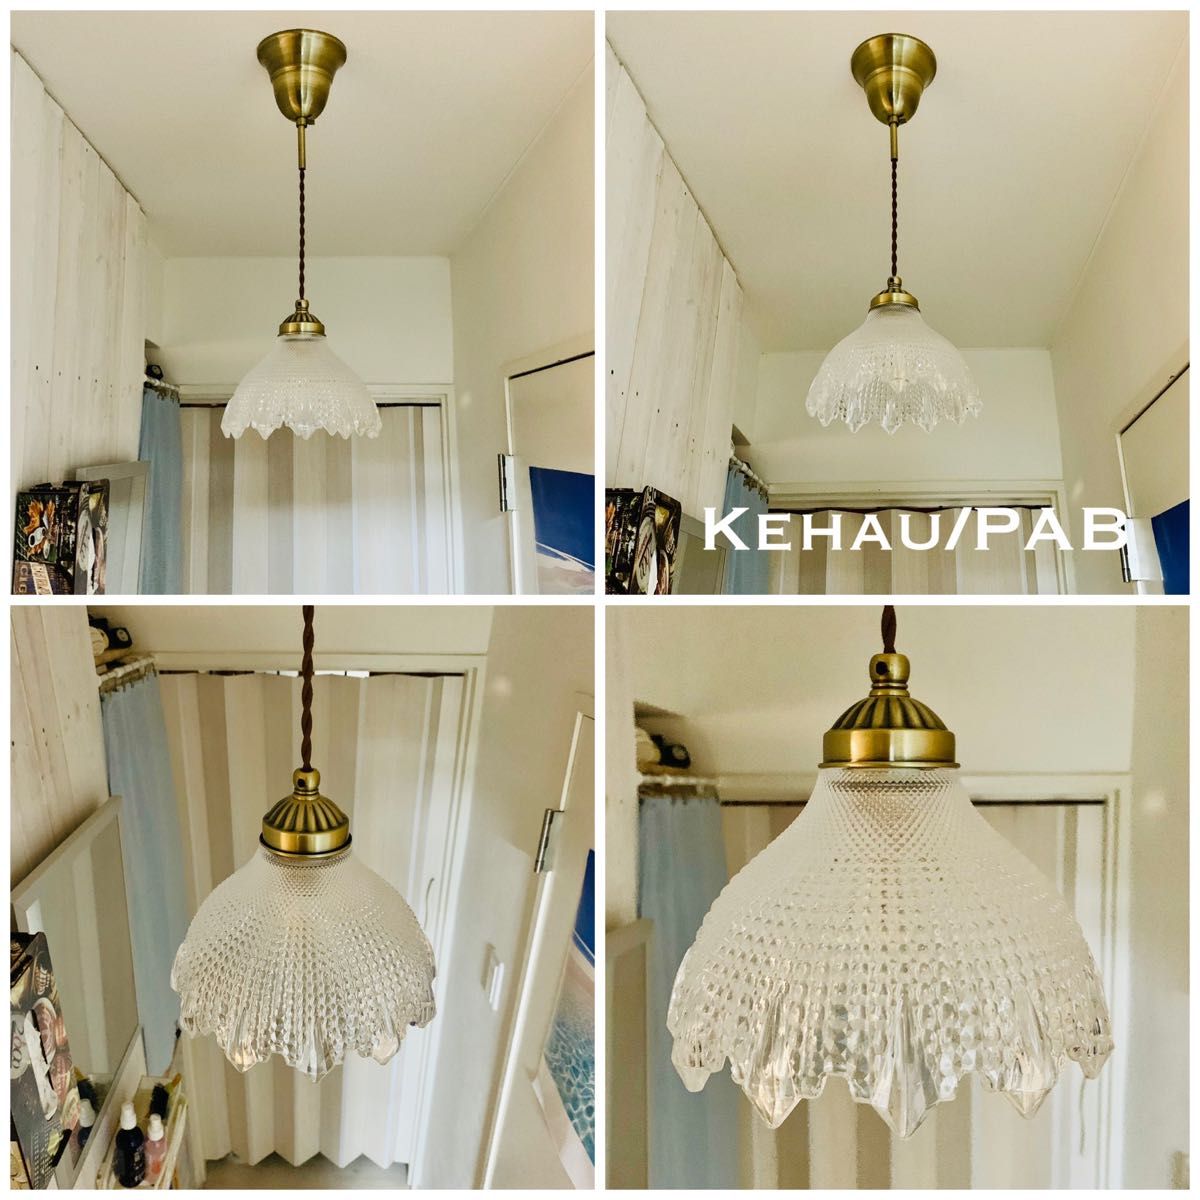 天井照明 Kehau/P ペンダントライト ガラス ランプシェード コード調節収納 シーリングカバー 簡単取付 インテリア 照明